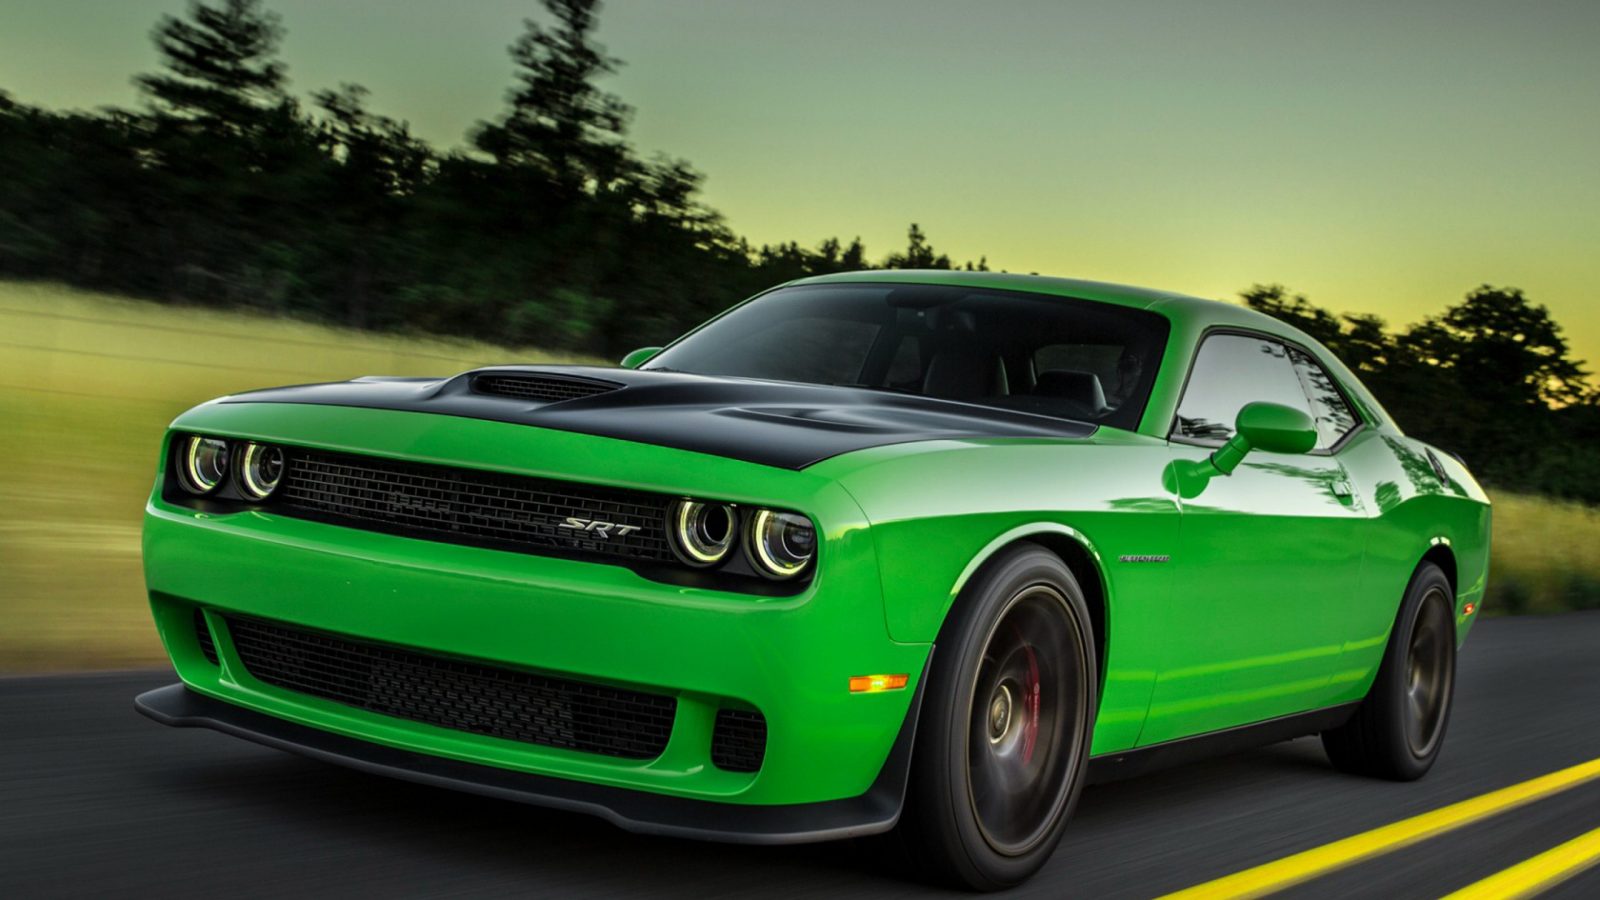 papel pintado verde del coche,vehículo terrestre,vehículo,coche,verde,coche musculoso